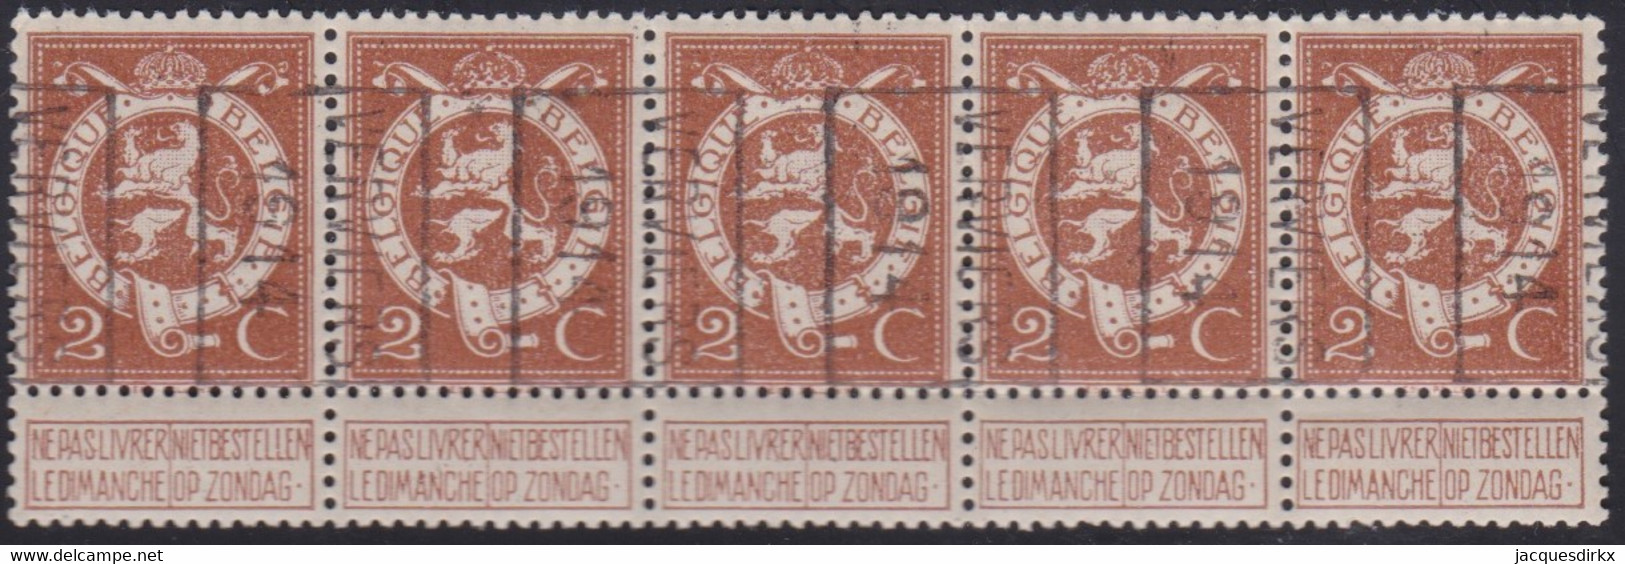 Belgie   .  OBP   .   Strook 5 Zegels 2381   (2 Paren)      .     **   .     Postfris  . / .   Neuf SANS Charniére - Rolstempels 1910-19